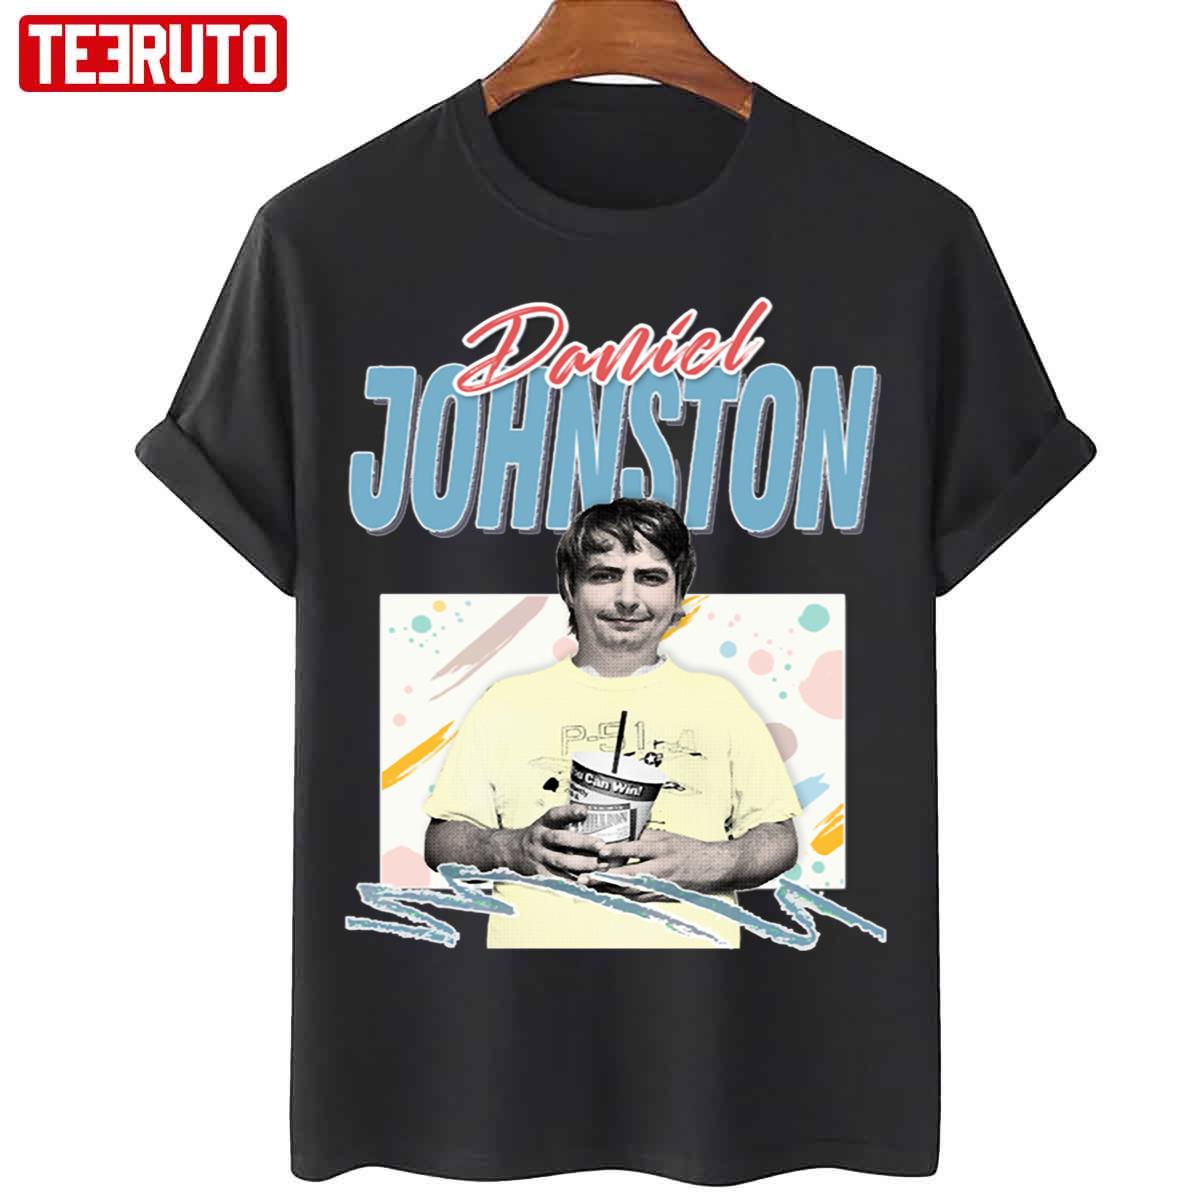 9Os Style Aesthetic Daniel Johnston Design Unisex T Shirt